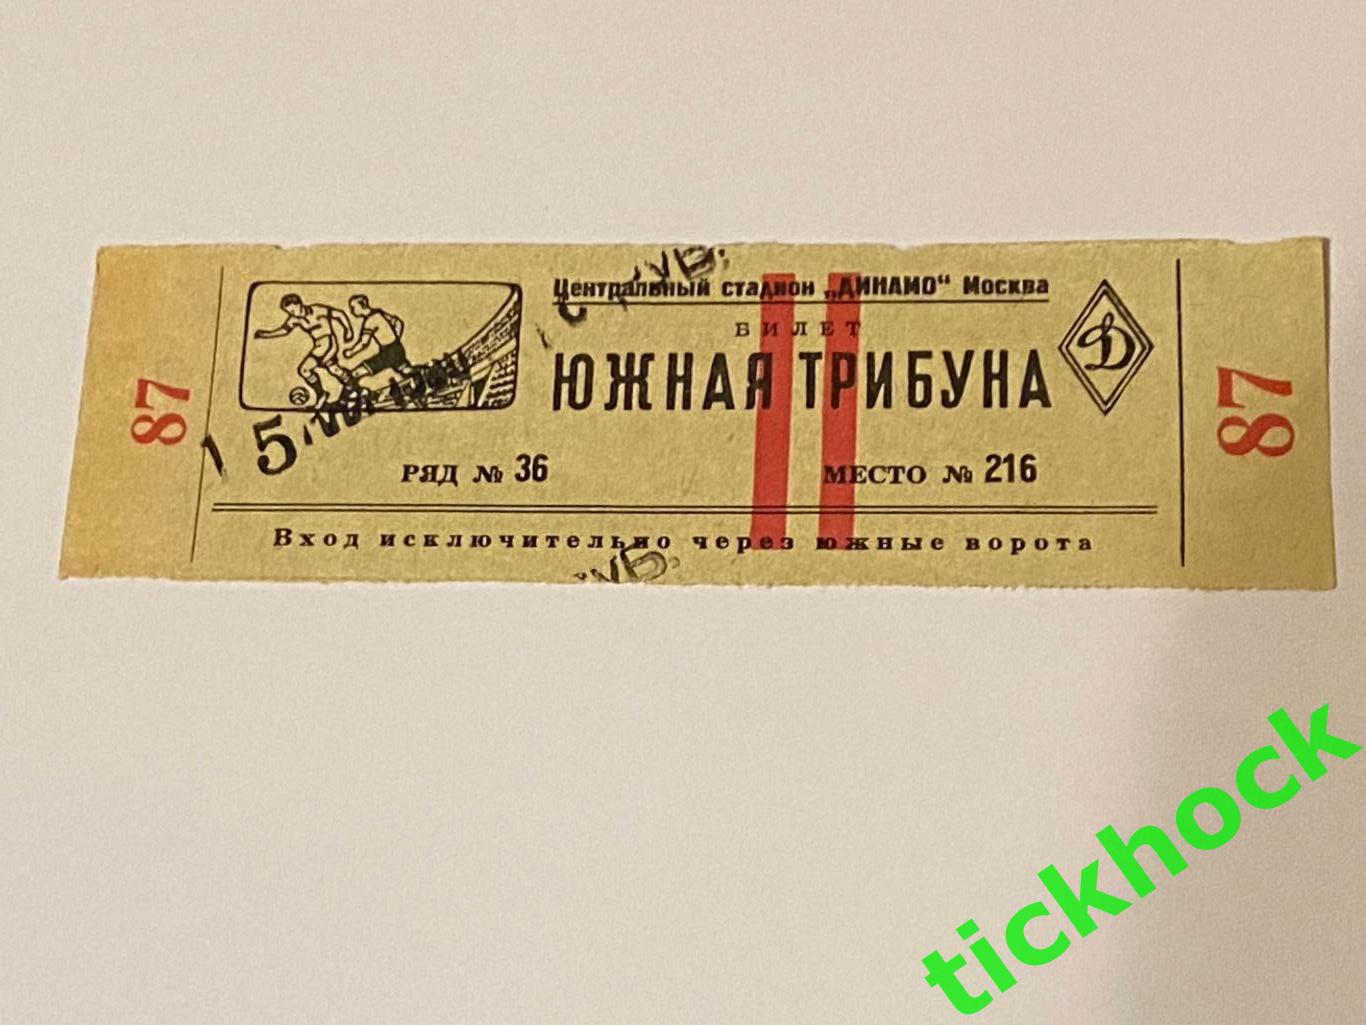 ВВС - Динамо Тбилиси 15 мая 1950 Чемпионат СССР --билет - Южная трибуна